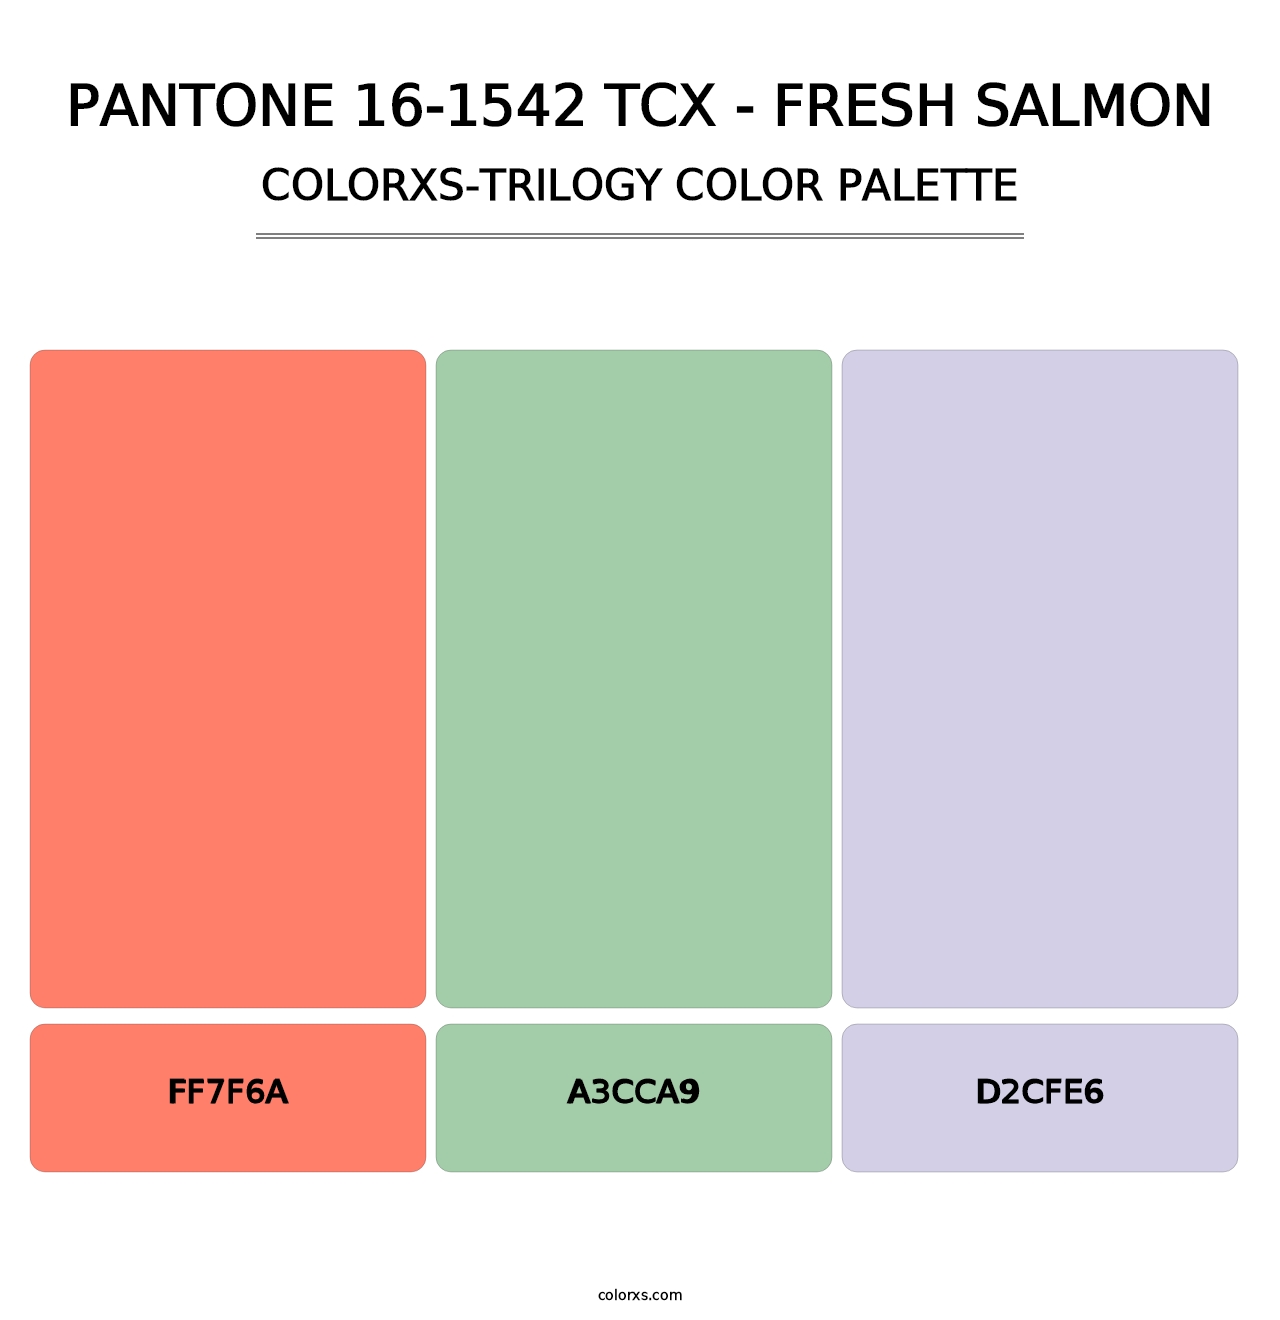 PANTONE 16-1542 TCX - Fresh Salmon - Colorxs Trilogy Palette